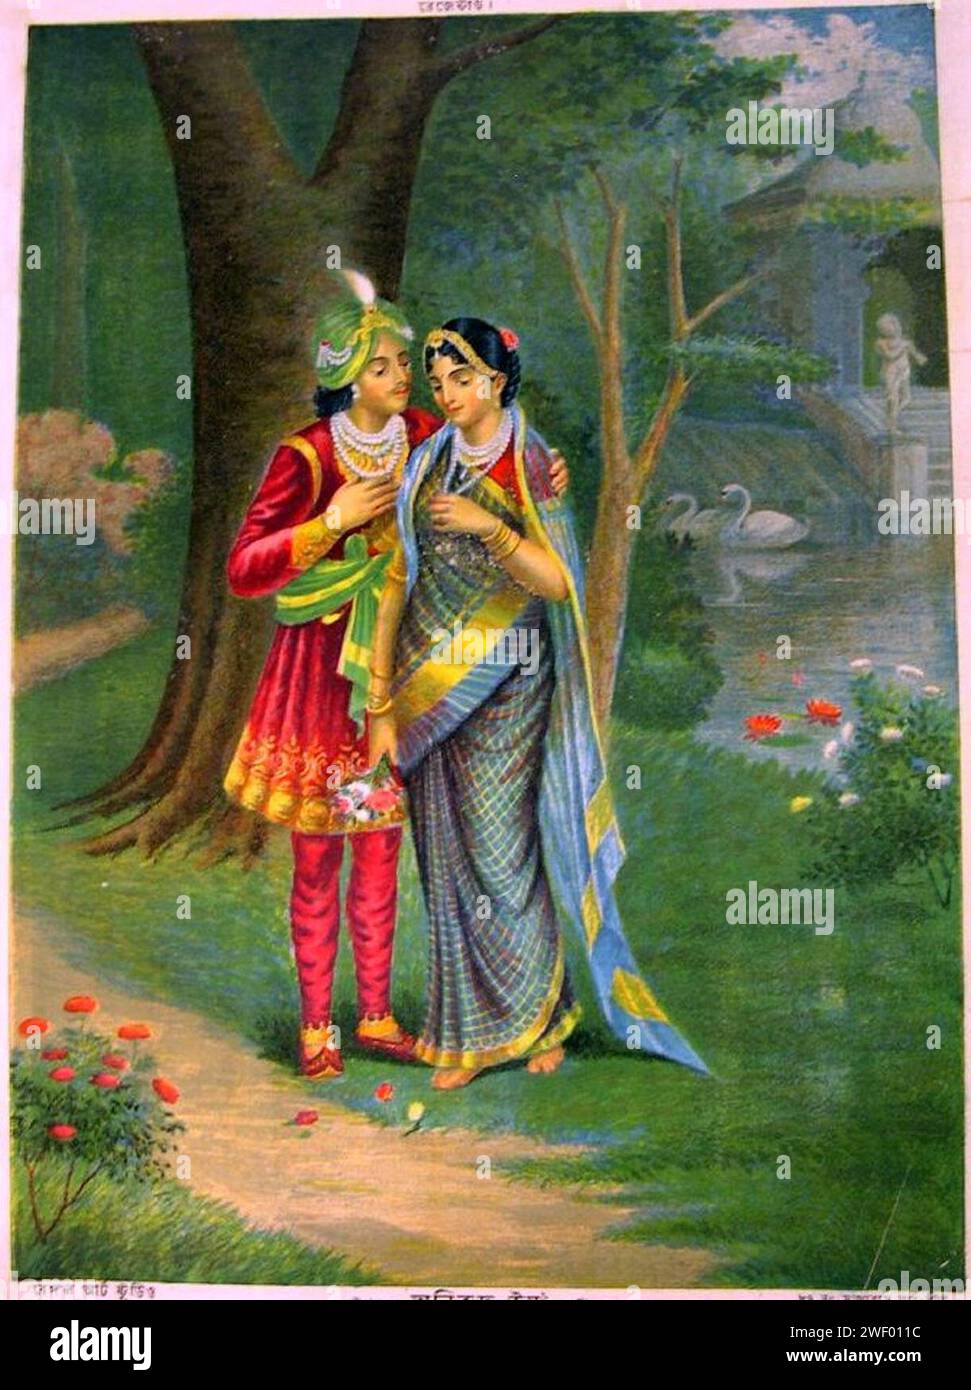 Aniruddha e Usha stand in una foresta con un western influenzato scena di paesaggio, completa con una coppia di cigni galleggianti in uno stagno, in background. Foto Stock